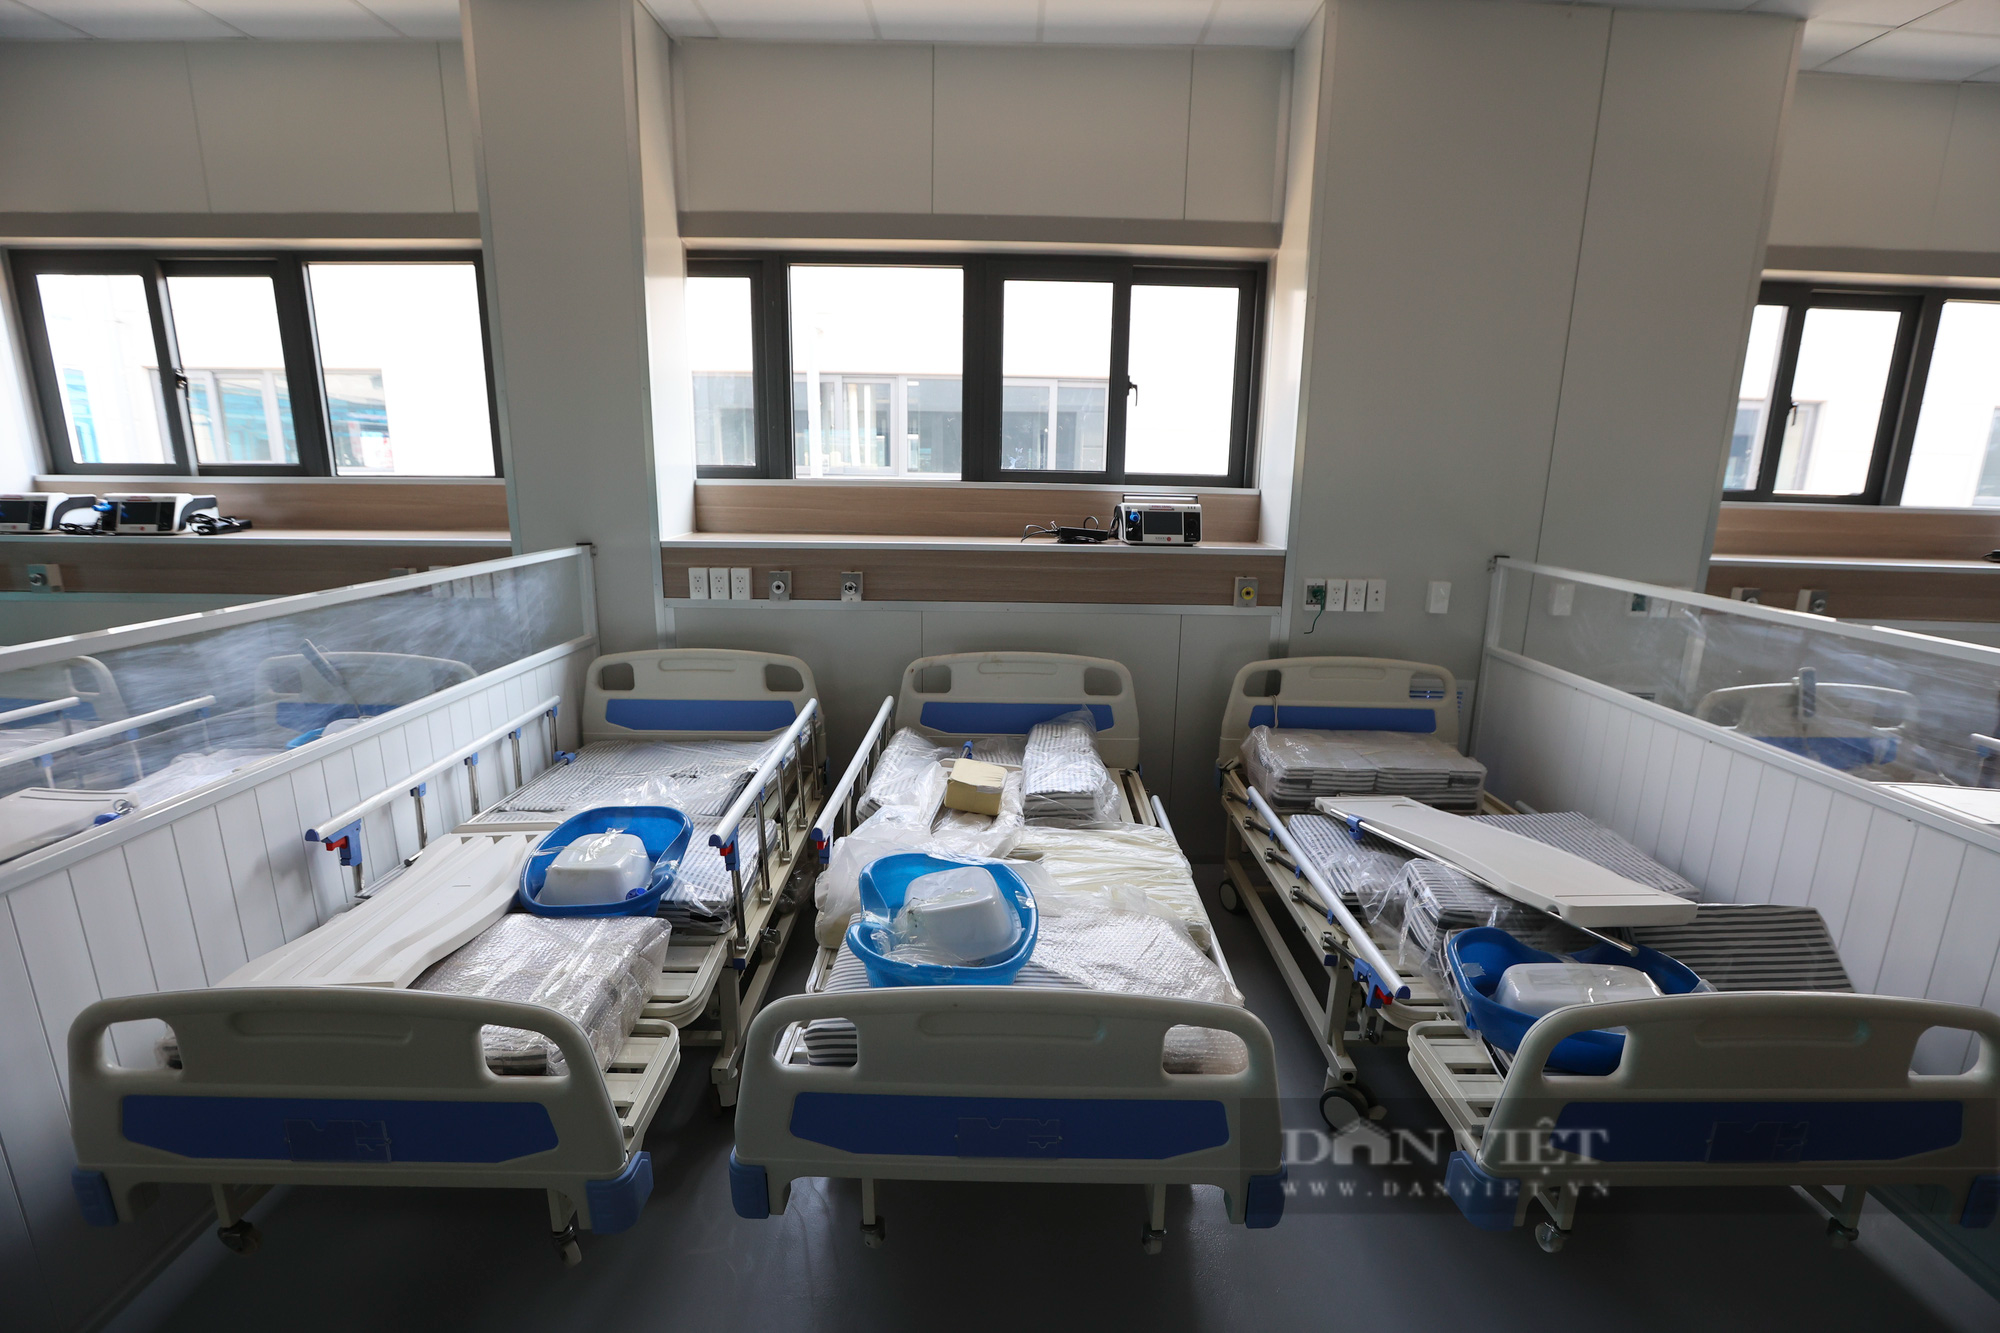 Cận cảnh trang thiết bị, máy móc hiện đại bên trong bệnh viện dã chiến điều trị bệnh nhân Covid-19 lớn nhất Hà Nội - Ảnh 4.